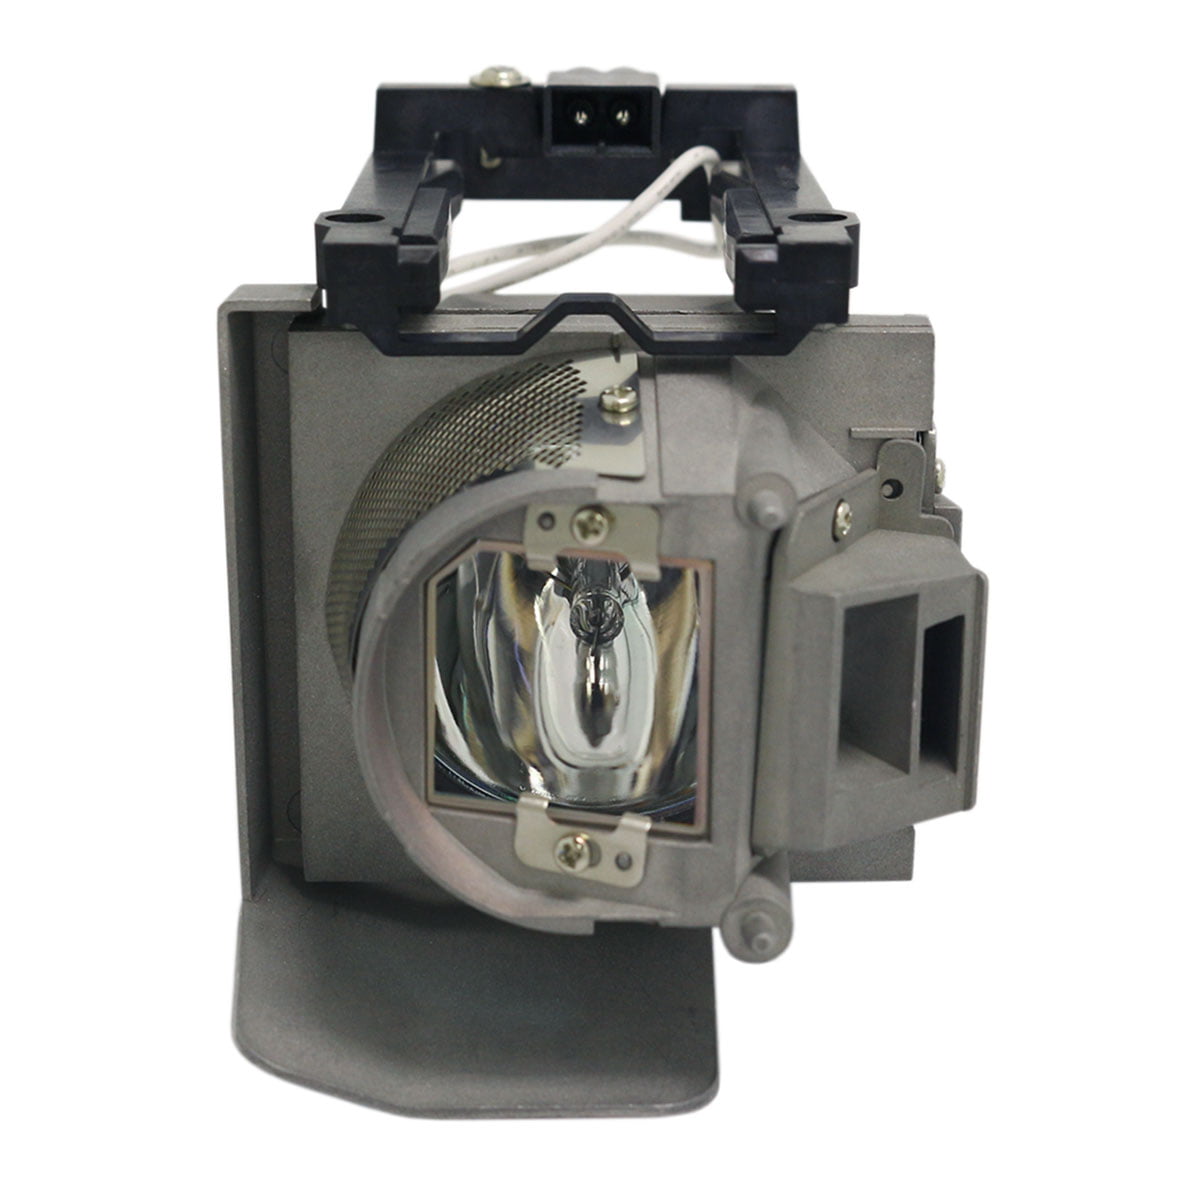 Details about   DLP Projector Lamp Bulb Module With Housing For Panasonic PT-GW34C PT-GW35C 